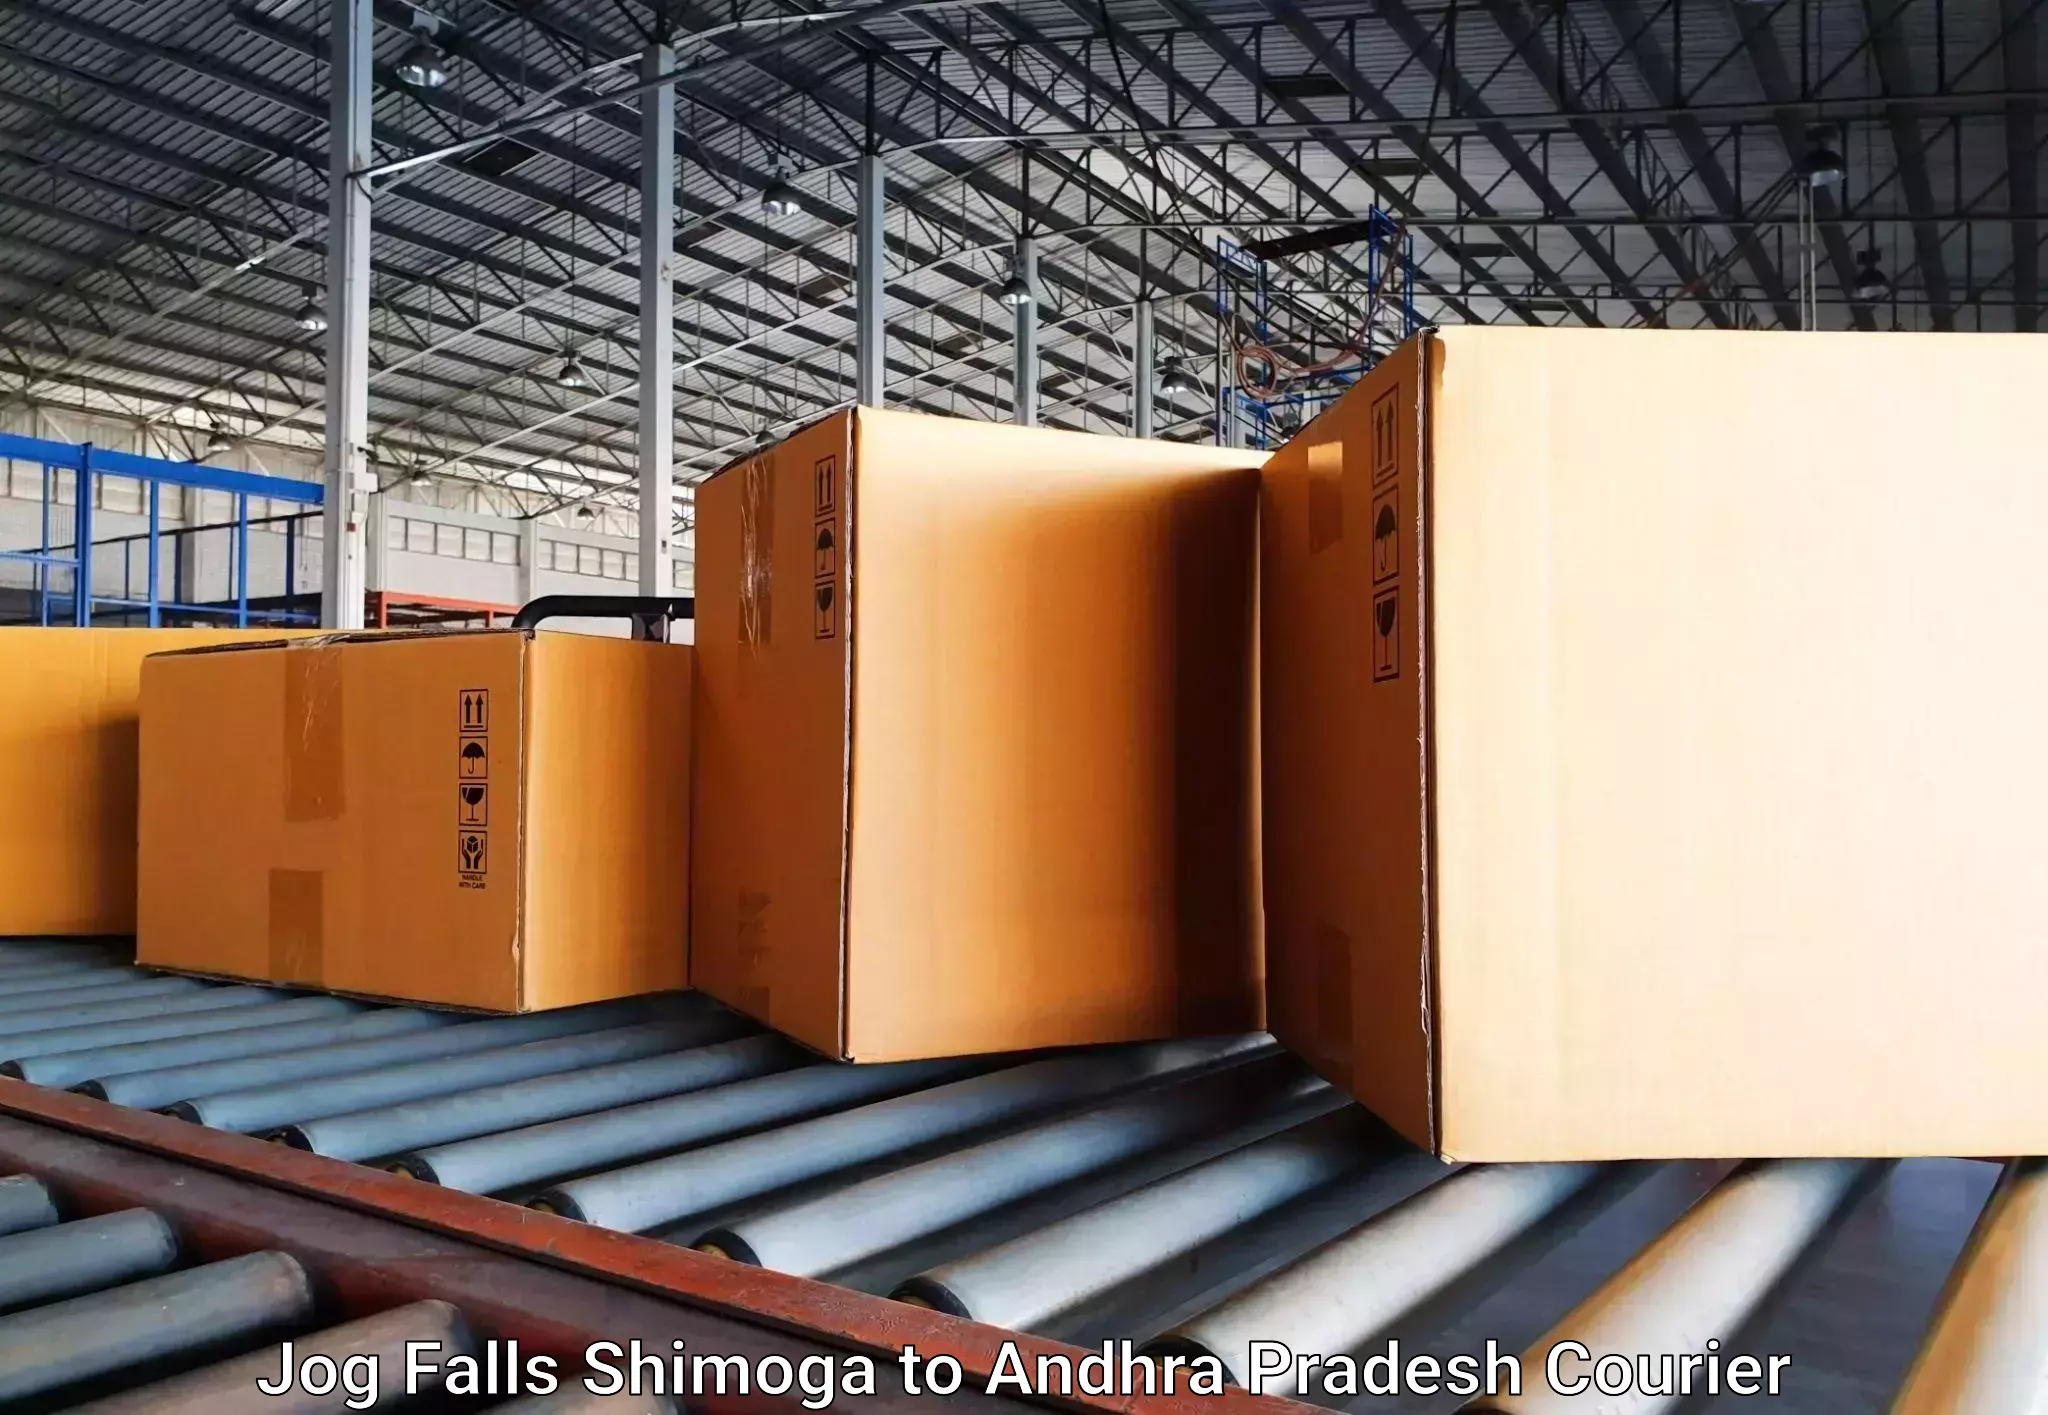 Baggage transport professionals Jog Falls Shimoga to Visakhapatnam Port